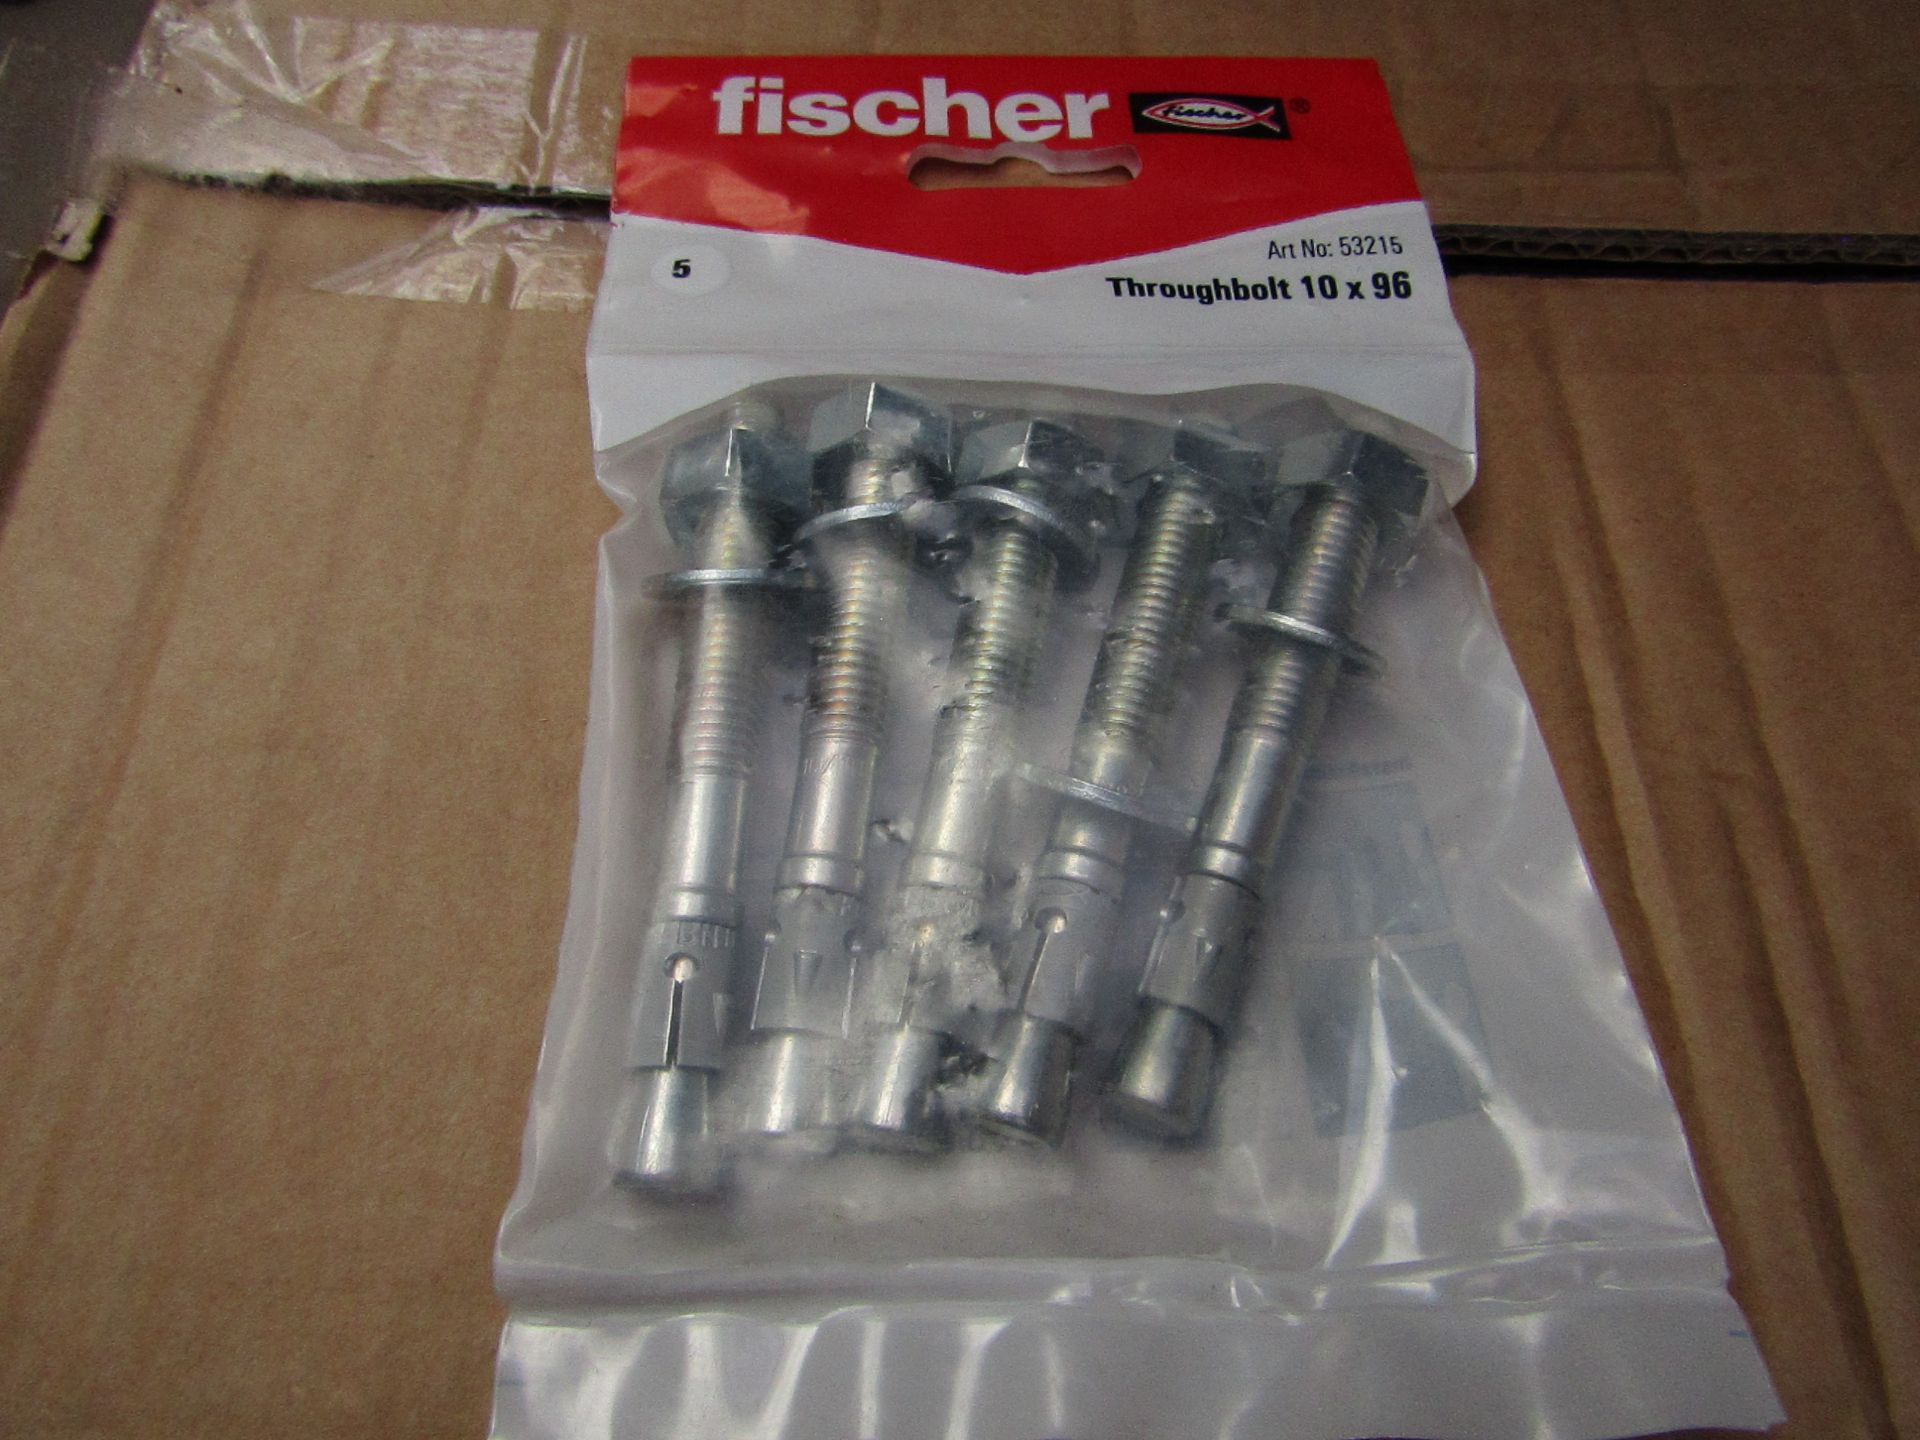 5x Fischer - Throughbolt 10 x 96 (Packs of 5) - New & Packaged.